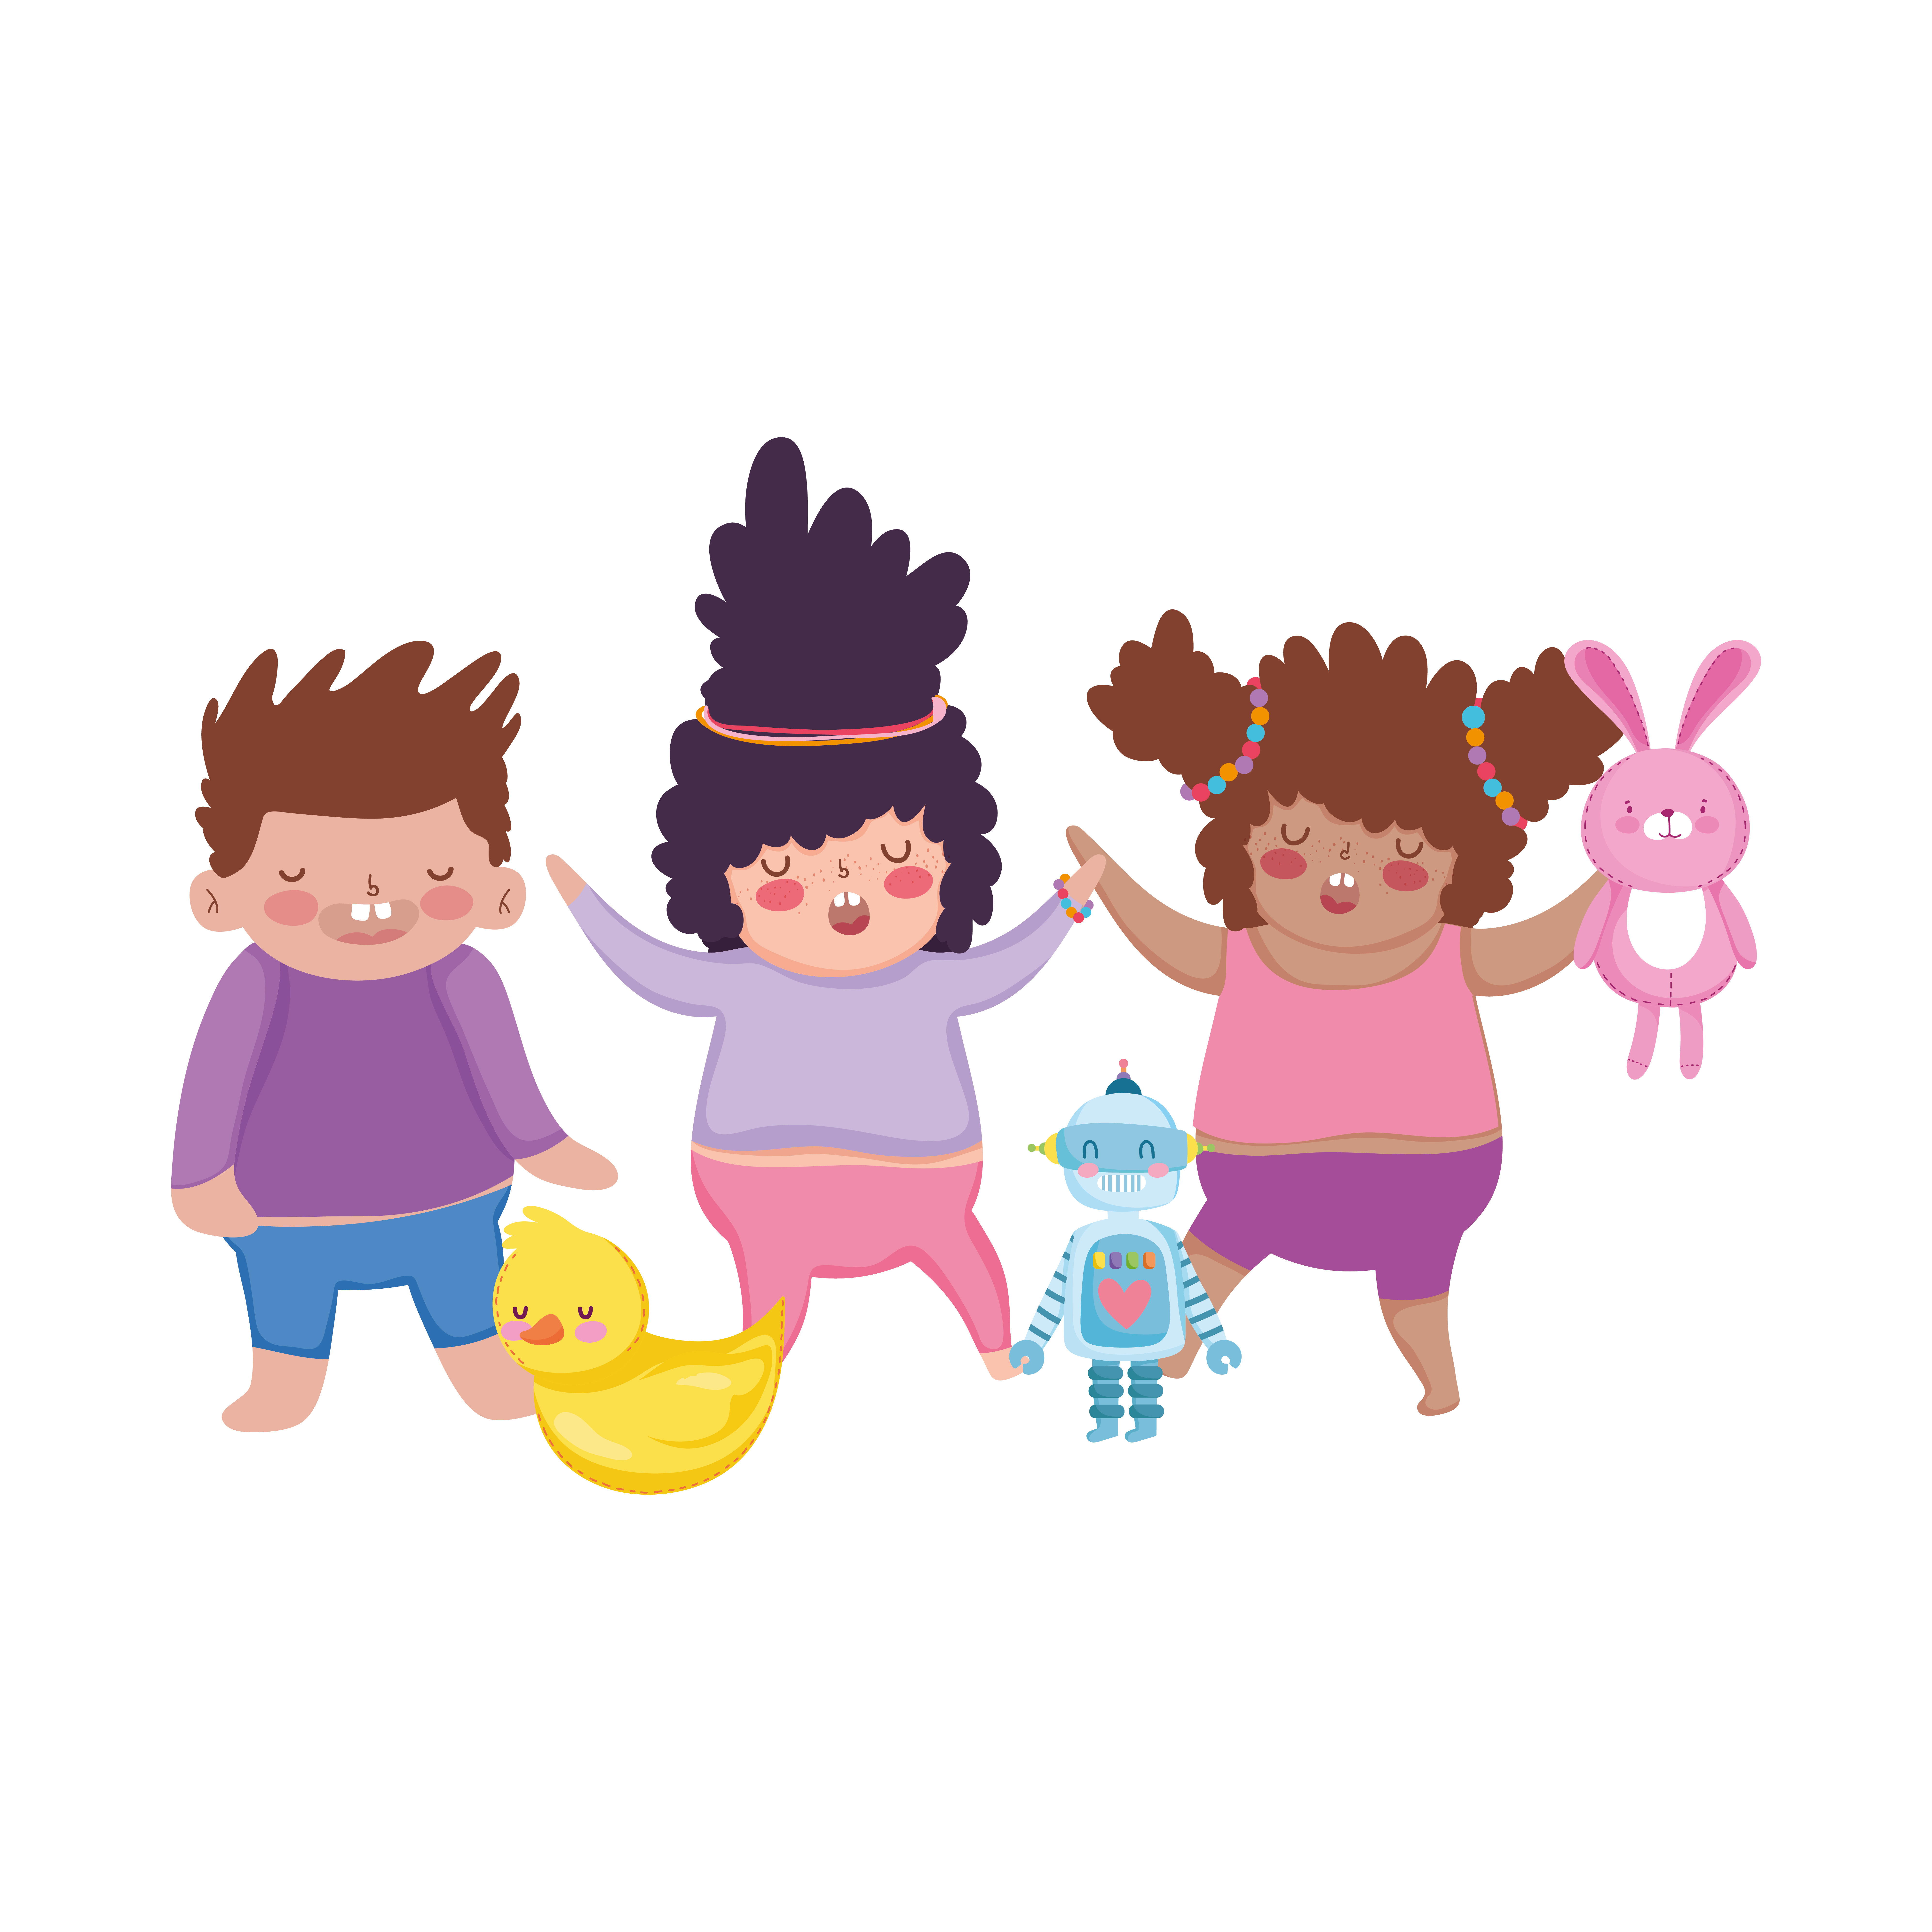 Encontre Diferenças Mini Jogo Para Crianças Com Robô Bonito. Jogo Engraçado  Com Robô De Desenho Animado Para O Bebê. Royalty Free SVG, Cliparts,  Vetores, e Ilustrações Stock. Image 194624645